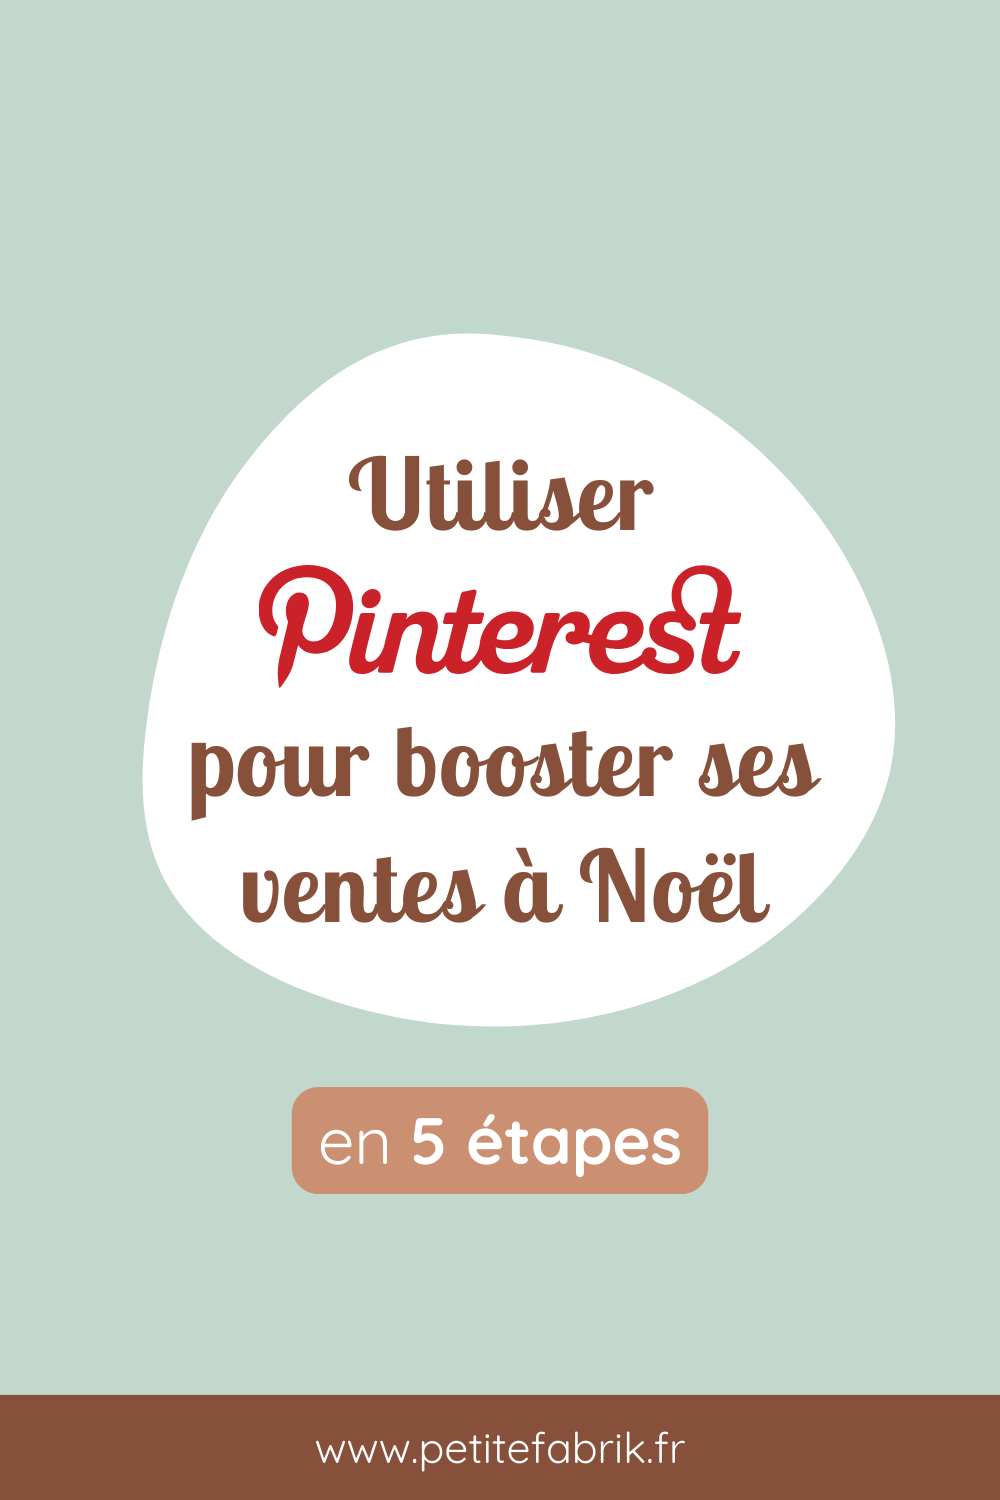 Utiliser Pinterest pour booster ses ventes à Noël